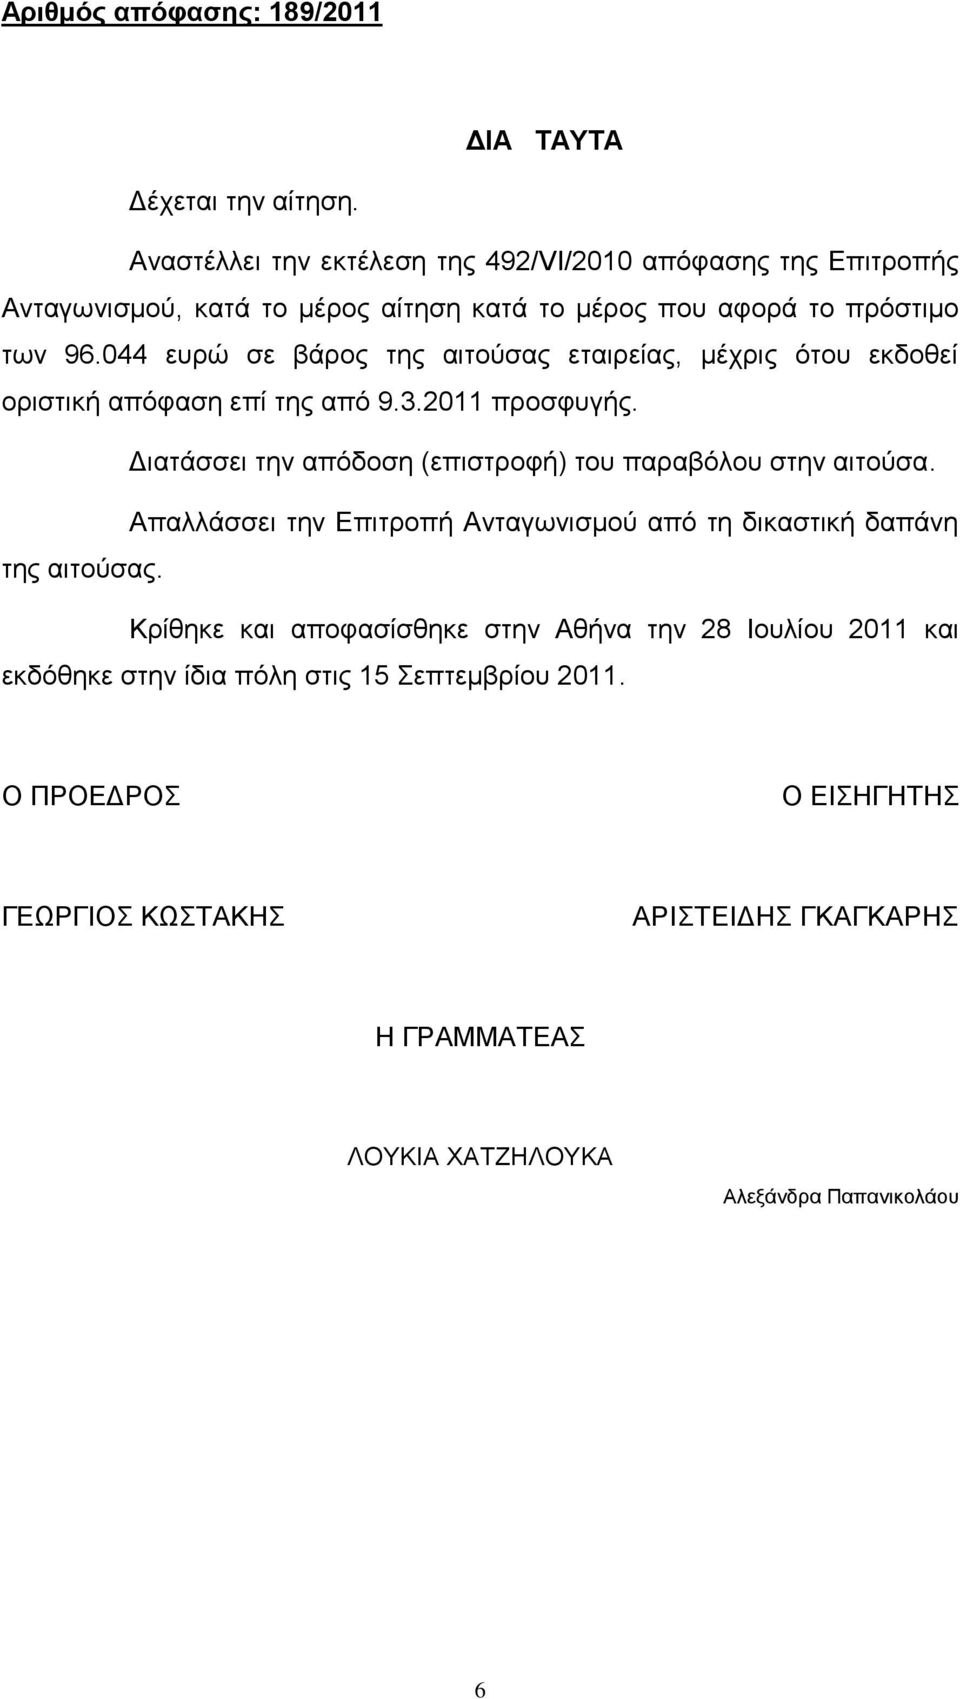 044 ευρώ σε βάρος της αιτούσας εταιρείας, μέχρις ότου εκδοθεί οριστική απόφαση επί της από 9.3.2011 προσφυγής.